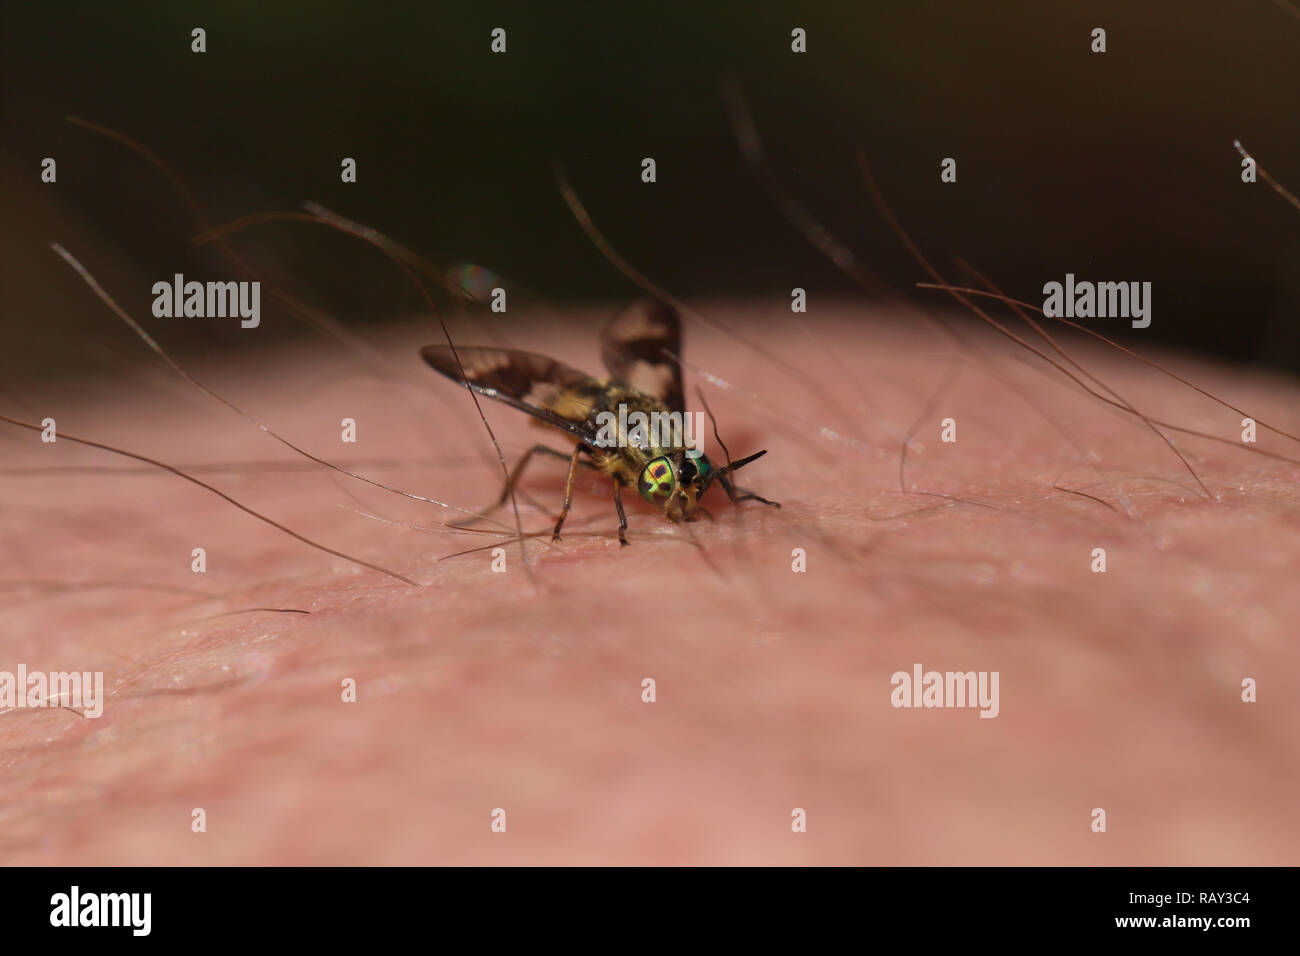 La woodsie à lits jumeaux (Deerfly Chrysops relictus) de mordre un humain. Les insectes peuvent offrir une morsure douloureuse. Banque D'Images